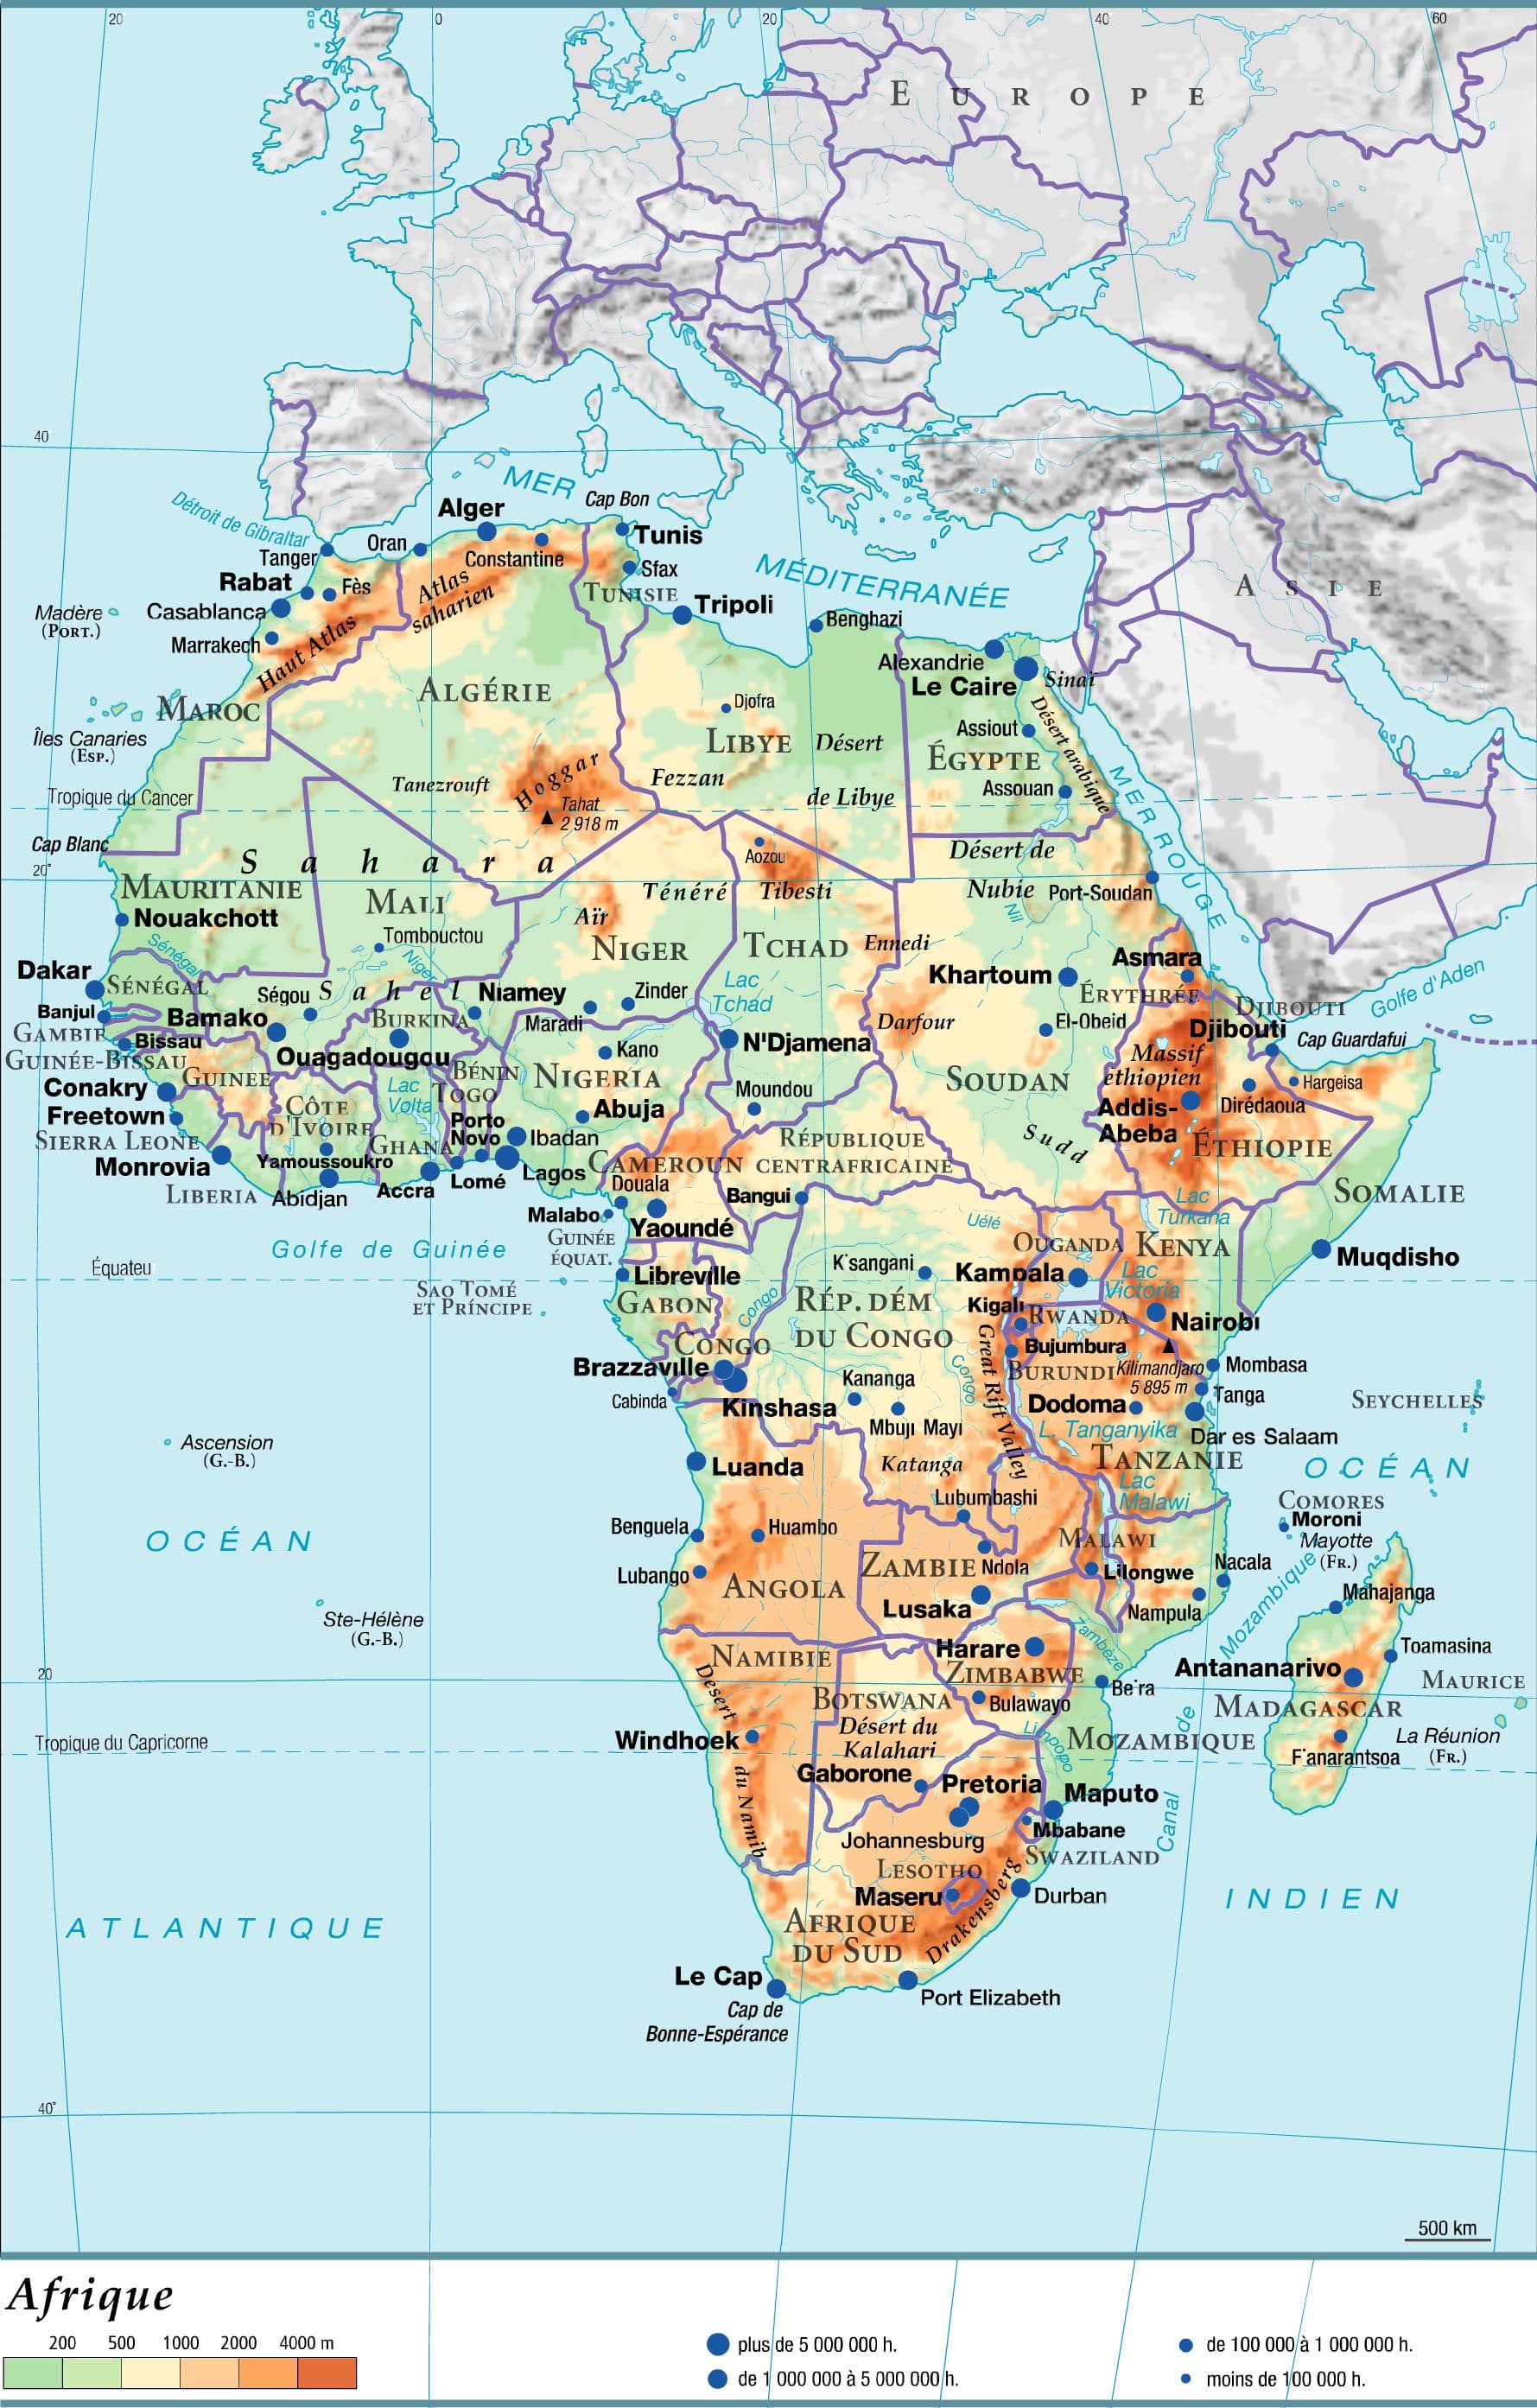 Encyclopédie Larousse en ligne - Afrique